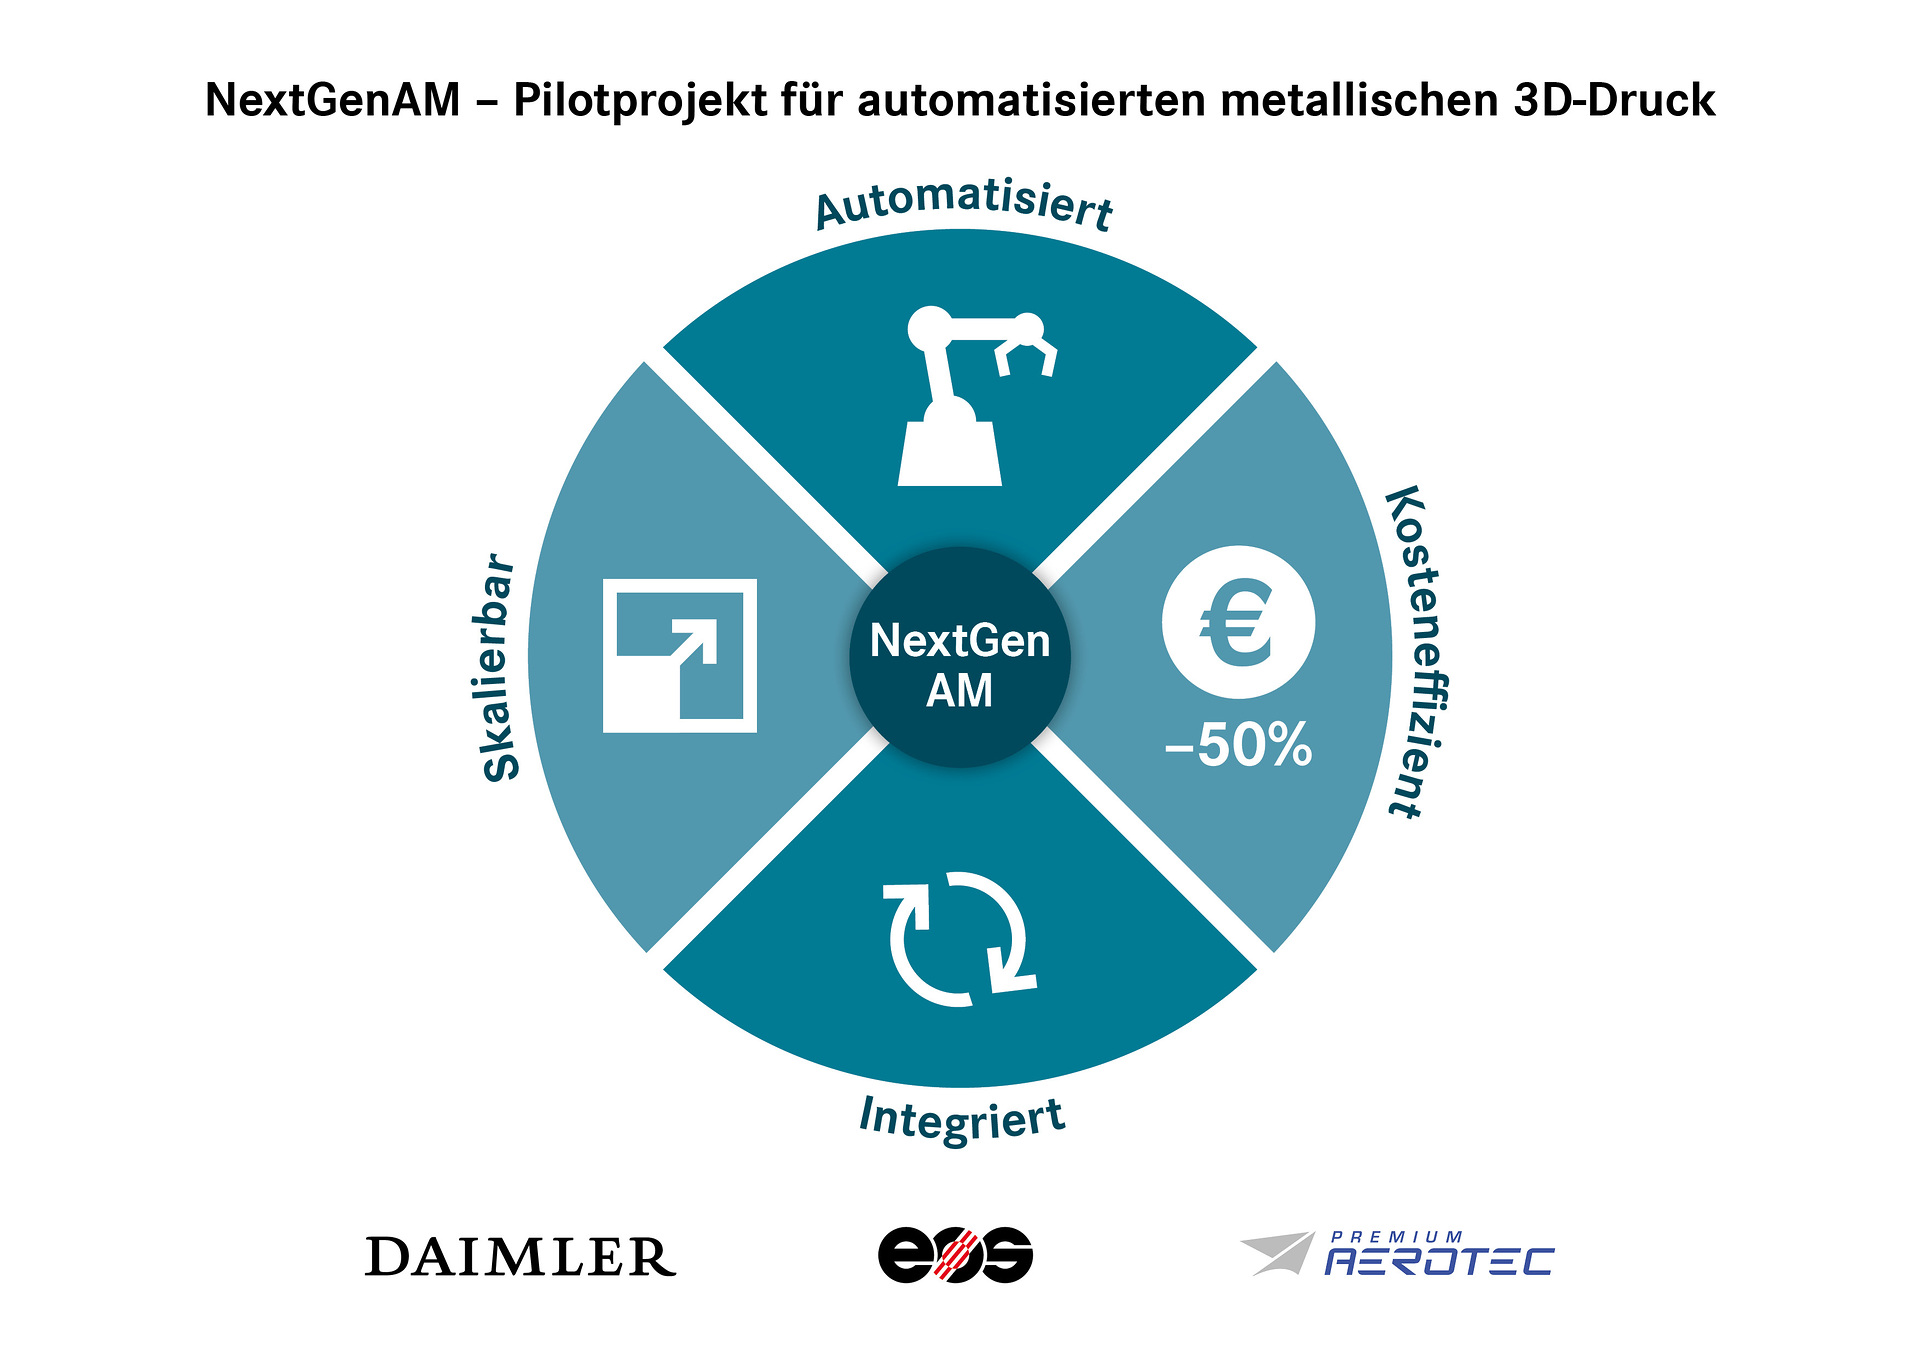 NextGenAM – Pilotprojekt für automatisierten metallischen 3D-Druck ein voller Erfolg